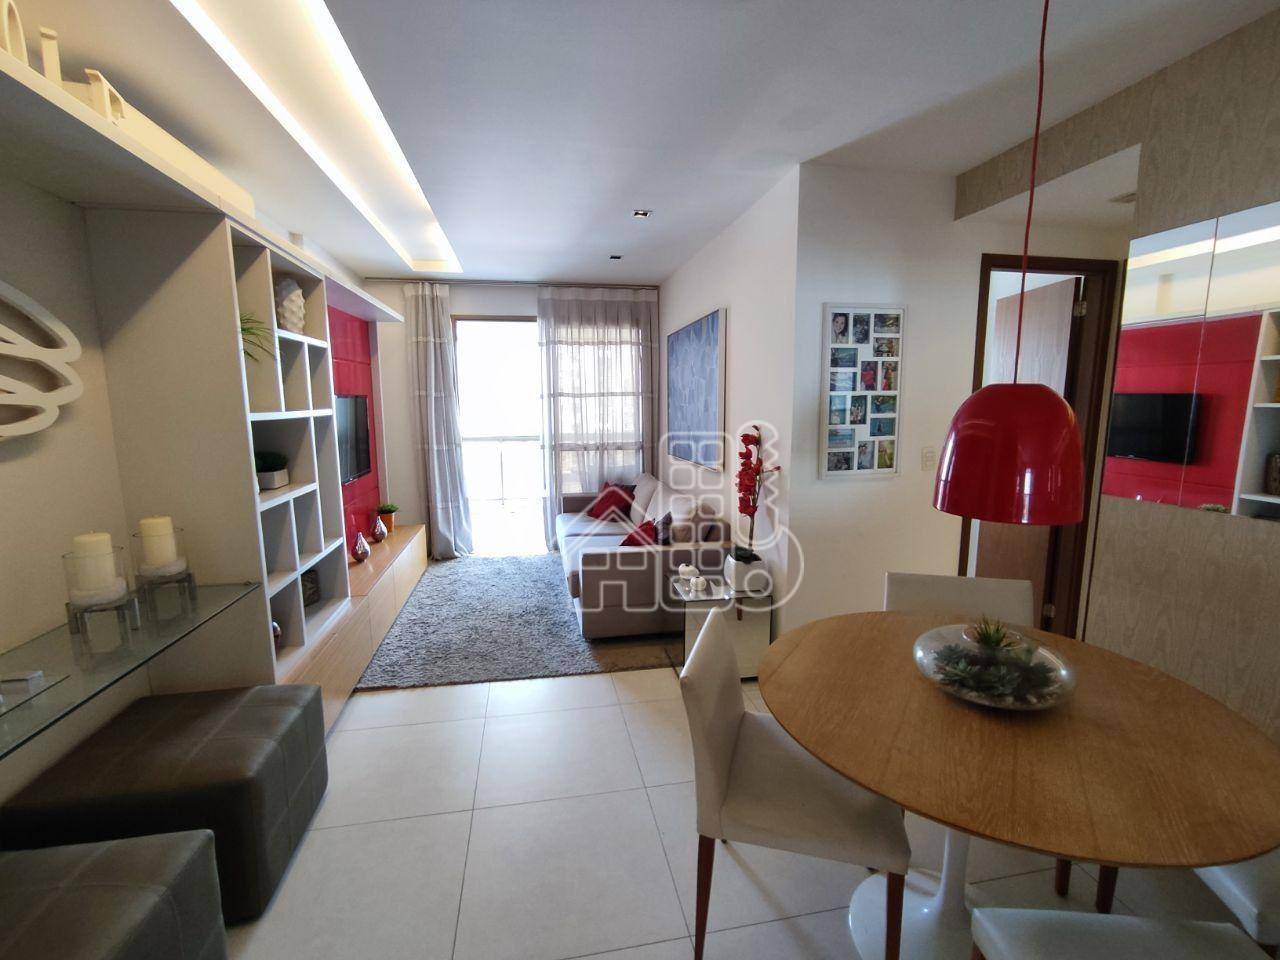 Apartamento com 2 dormitórios à venda, 80 m² por R$ 920.000,00 - Icaraí - Niterói/RJ